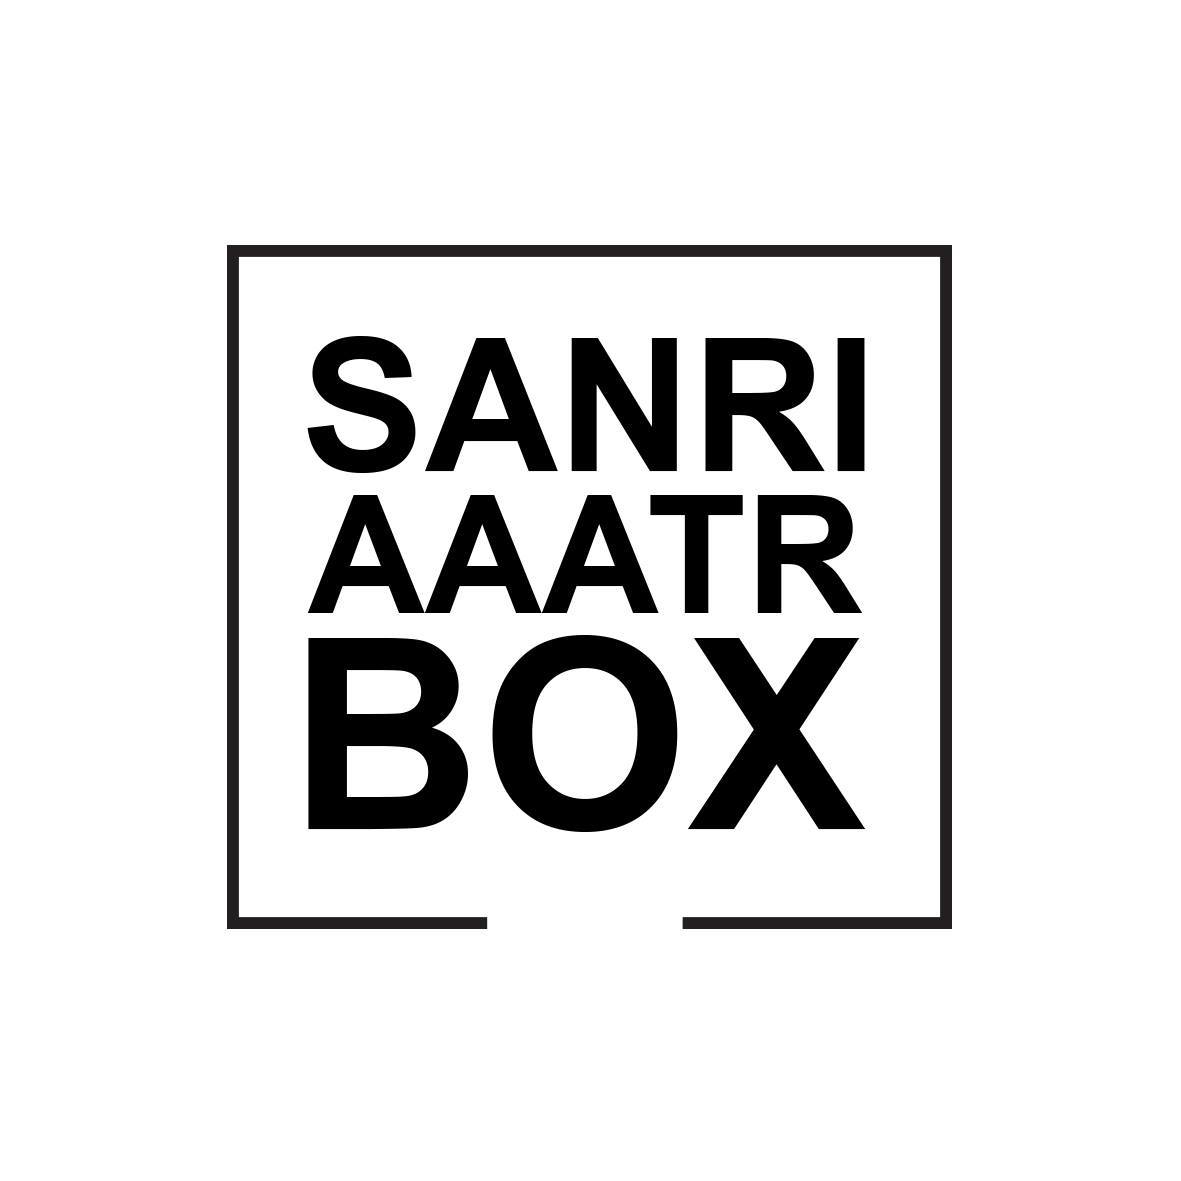 Souvenir machine “SANRI AAATR BOX”